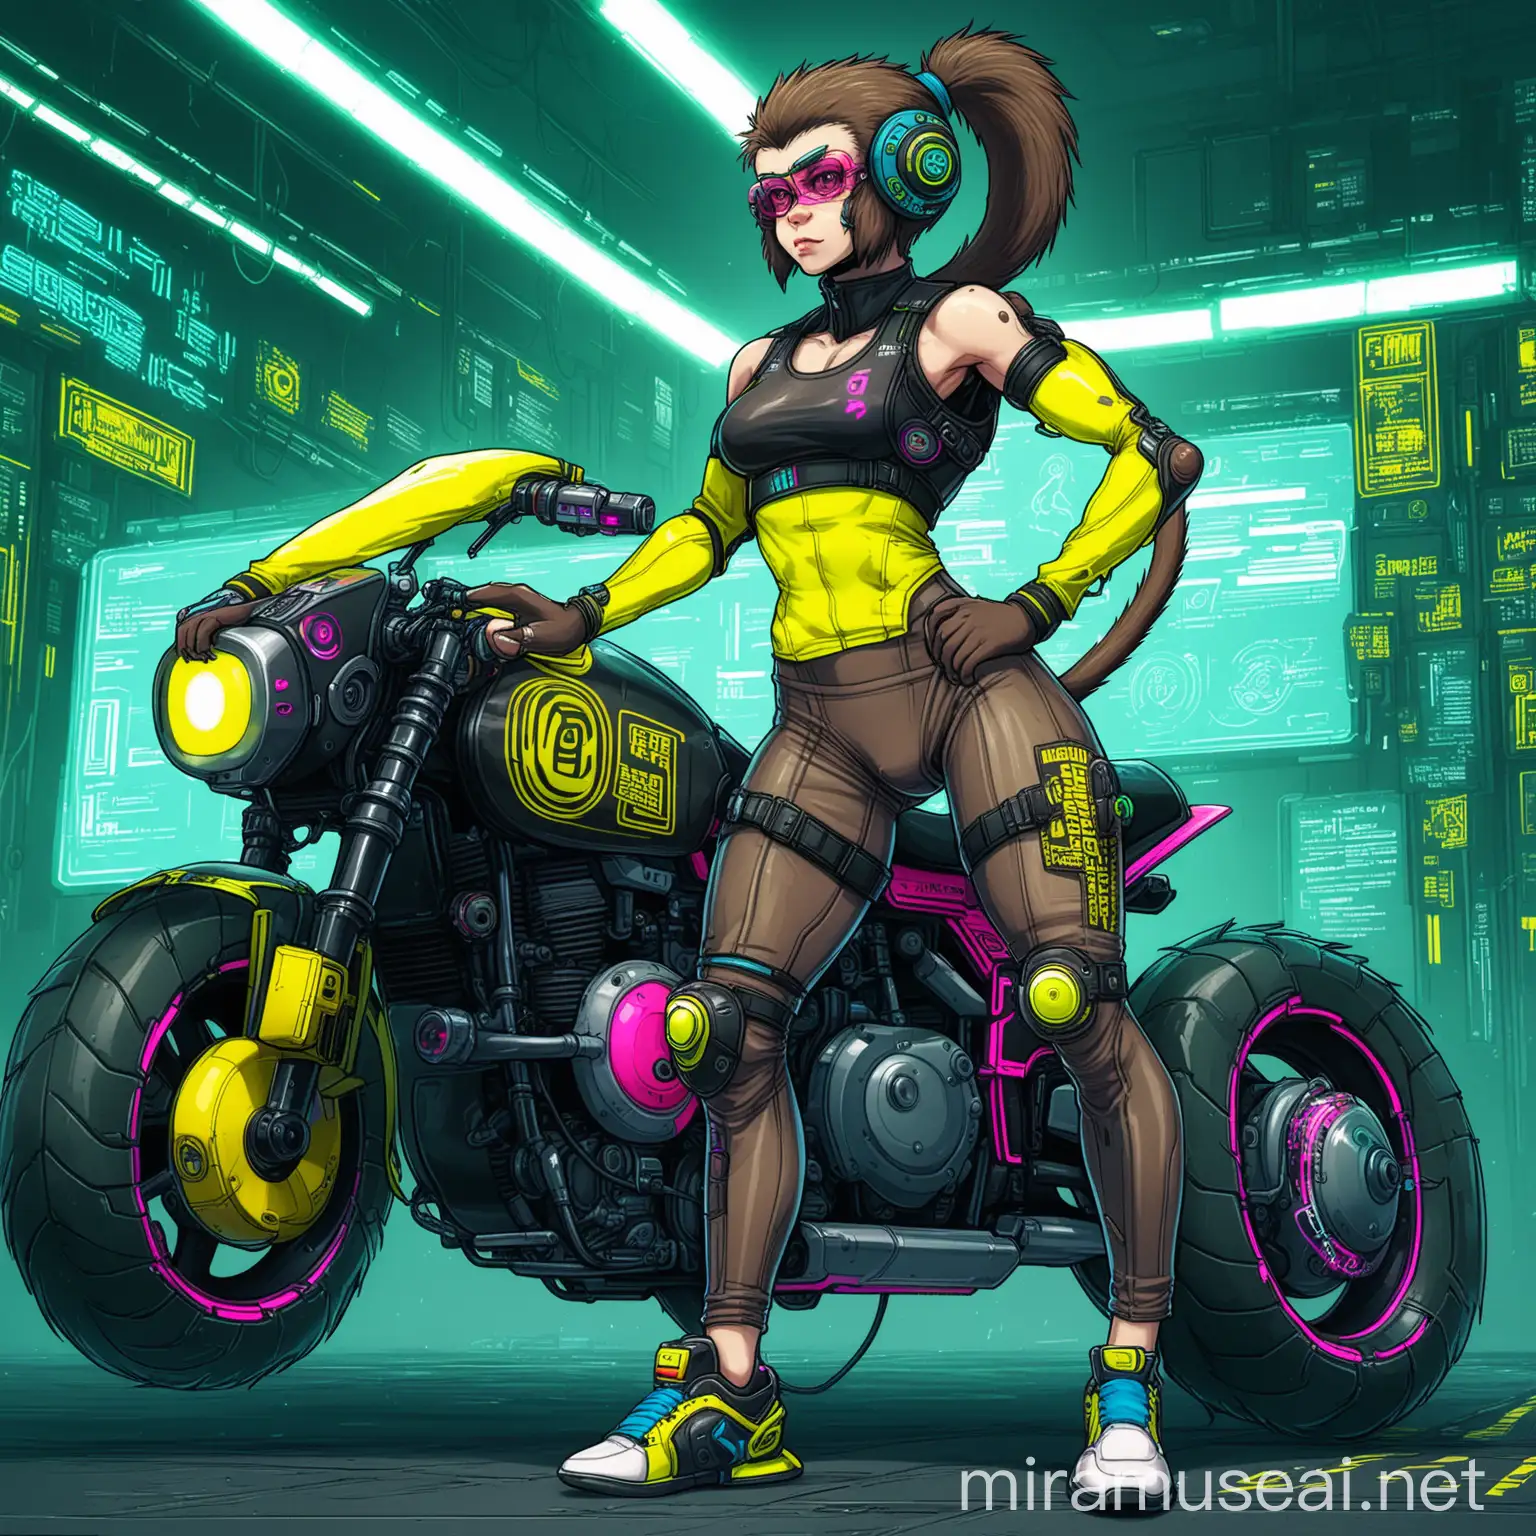 Cyberpunk Female Monkey Athlete in Motorcyclearmor